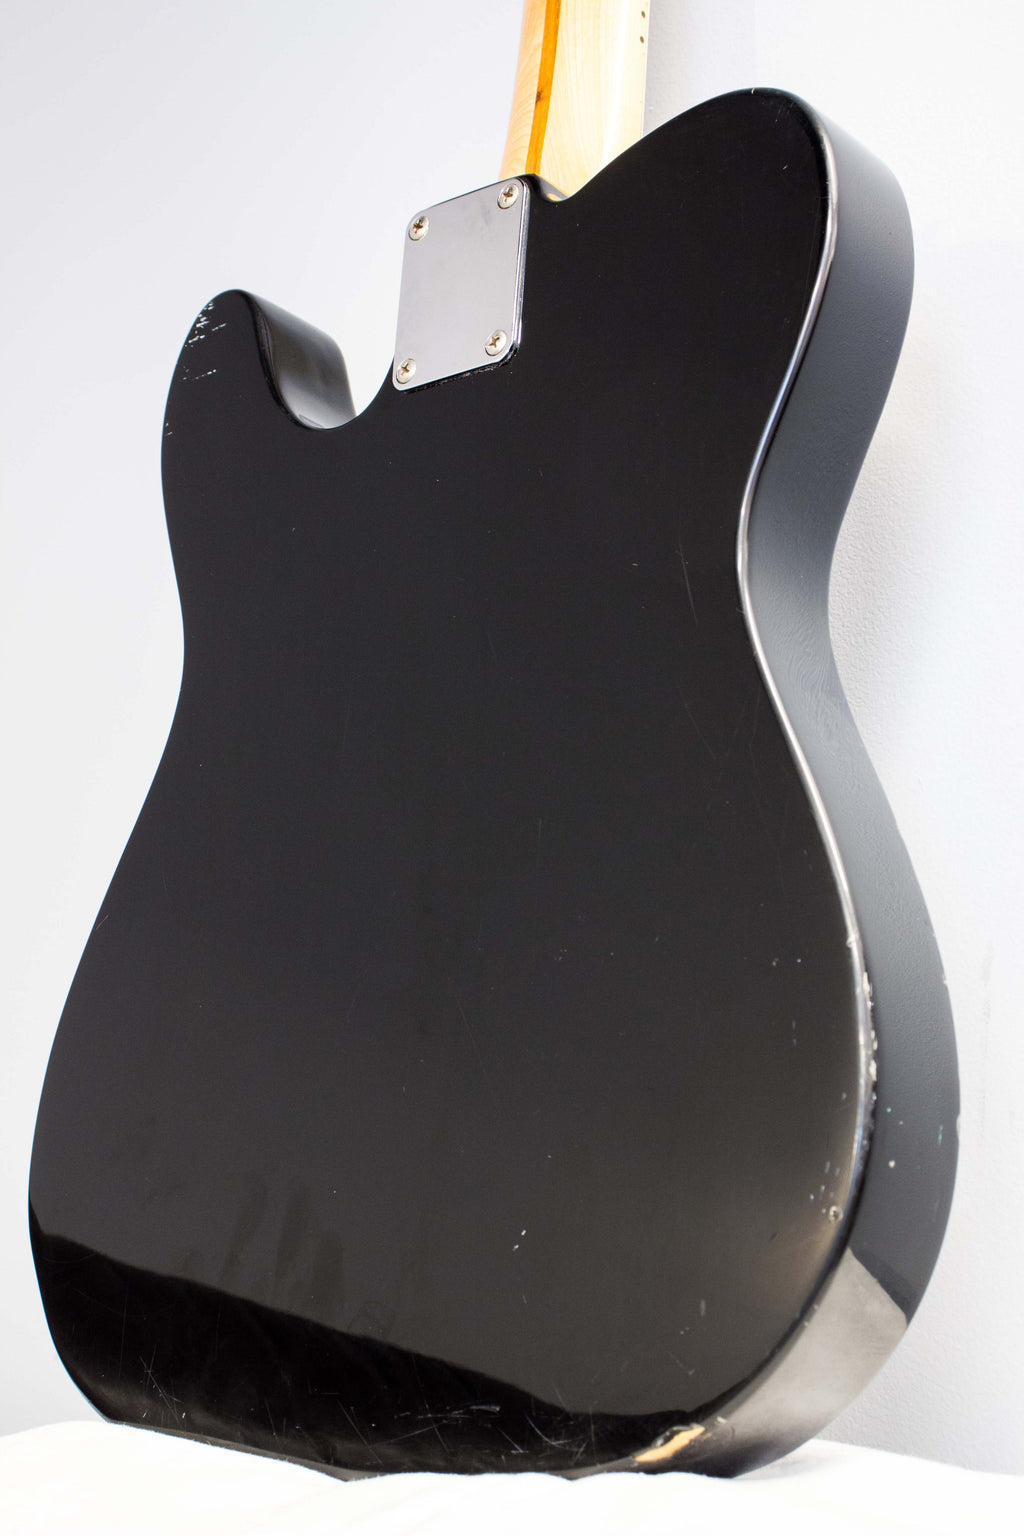 Fender Standard Telecaster Black 1994